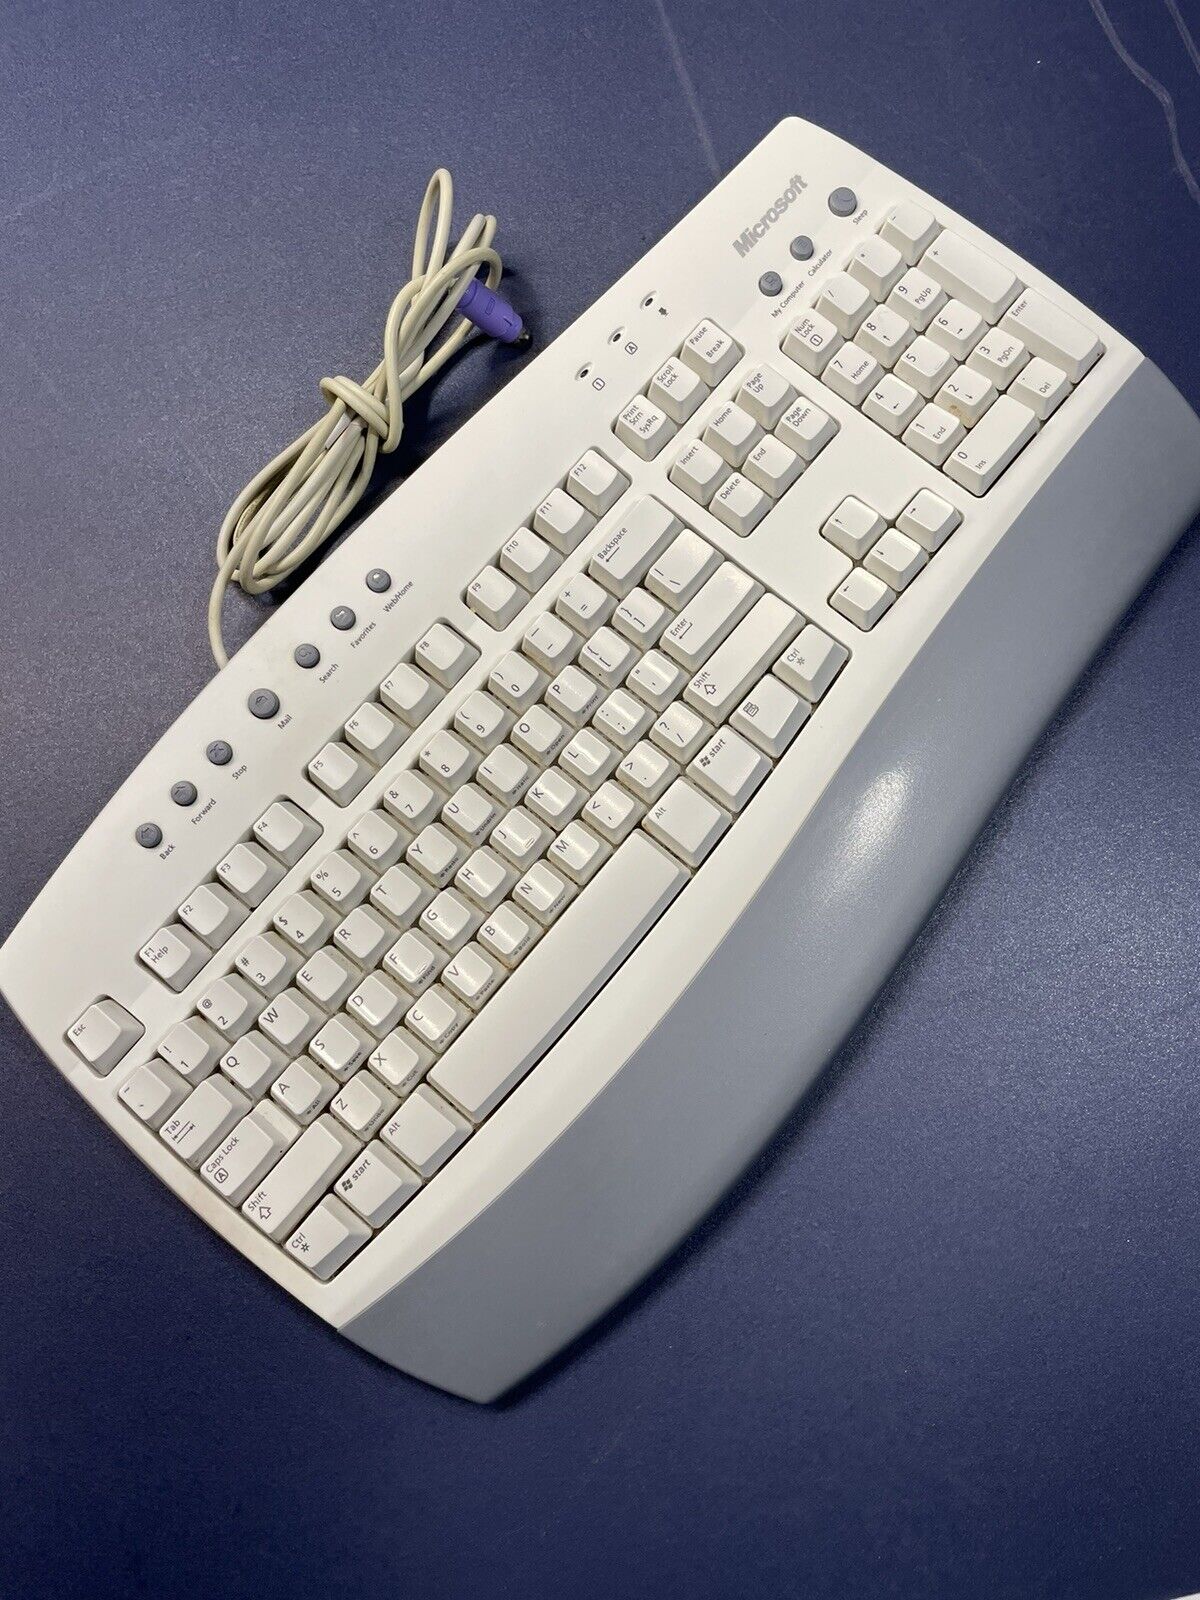 Microsoft Internet Clicky Keyboard 3902A008 Model RT9443 Vintage